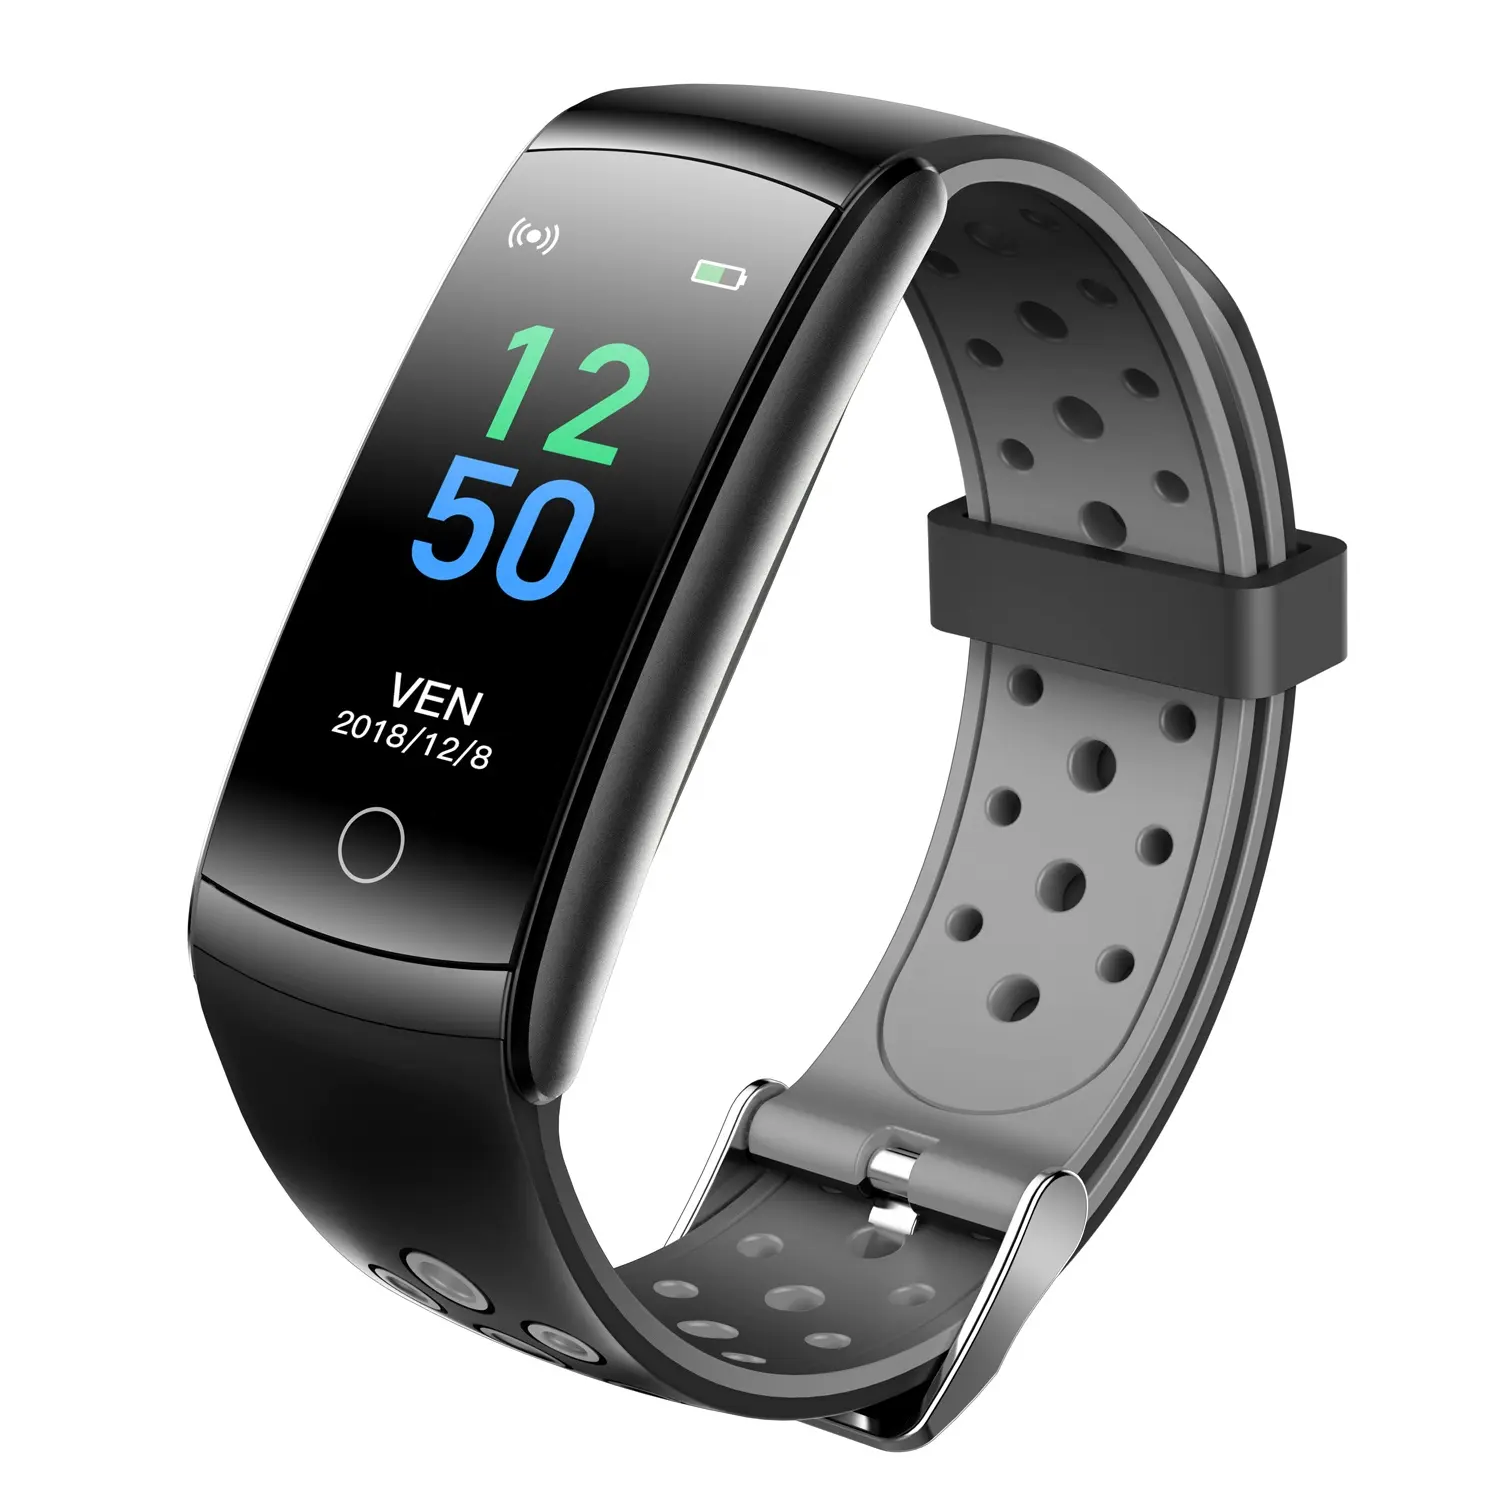 2021 새로운 도착 체온 모니터 Q8T Smartwatch 혈압 산소 피트니스 밴드 알람 시계 스마트 팔찌